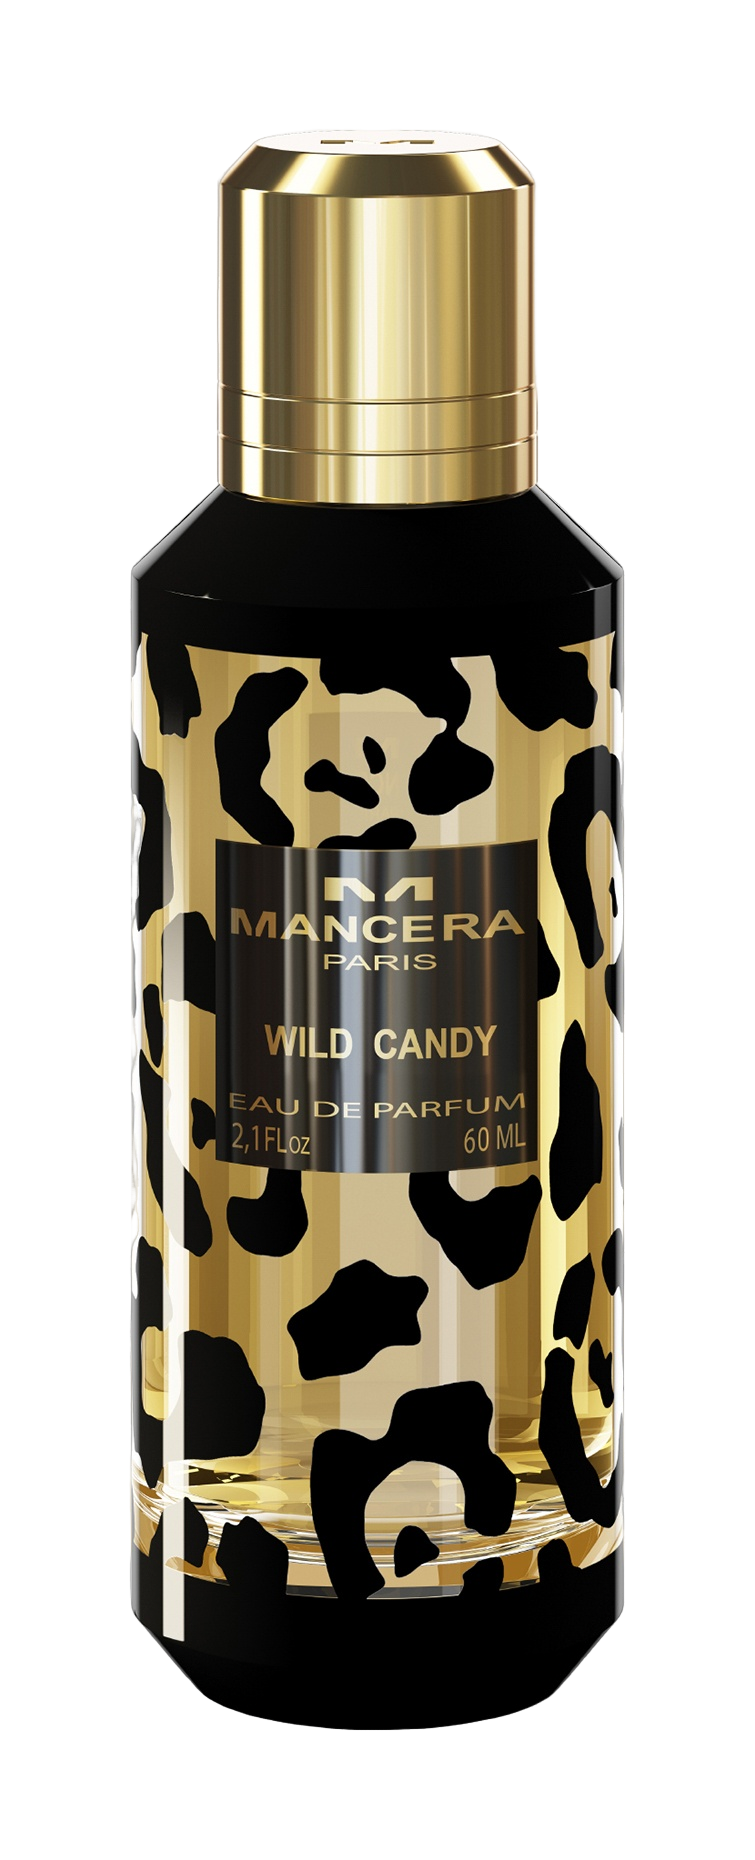 Wilds парфюмерная вода. Mancera Wild Cherry 60 мл. Mancera Wild Cherry EDP, 60 ml. Mancera Wild Leather 60 мл. Mancera Wild Candy.